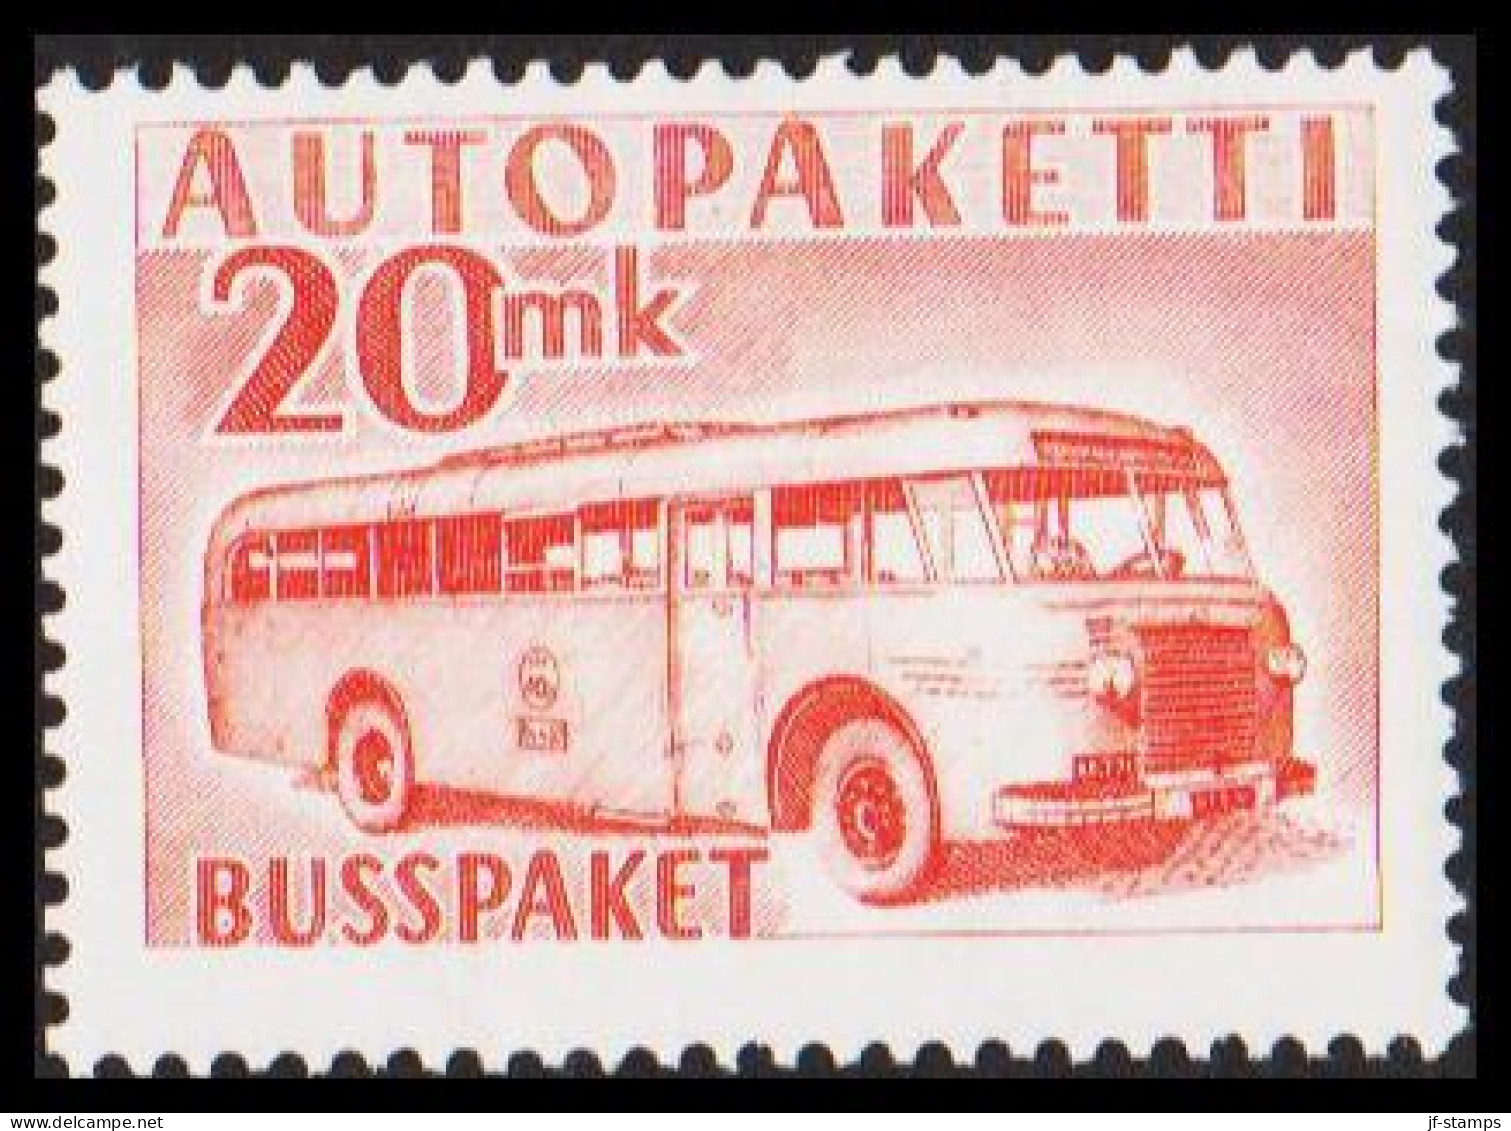 1952-1958. FINLAND. Mail Bus. 20 Mk. AUTOPAKETTI - BUSSPAKET Never Hinged. (Michel AP 7) - JF534382 - Envios Por Bus